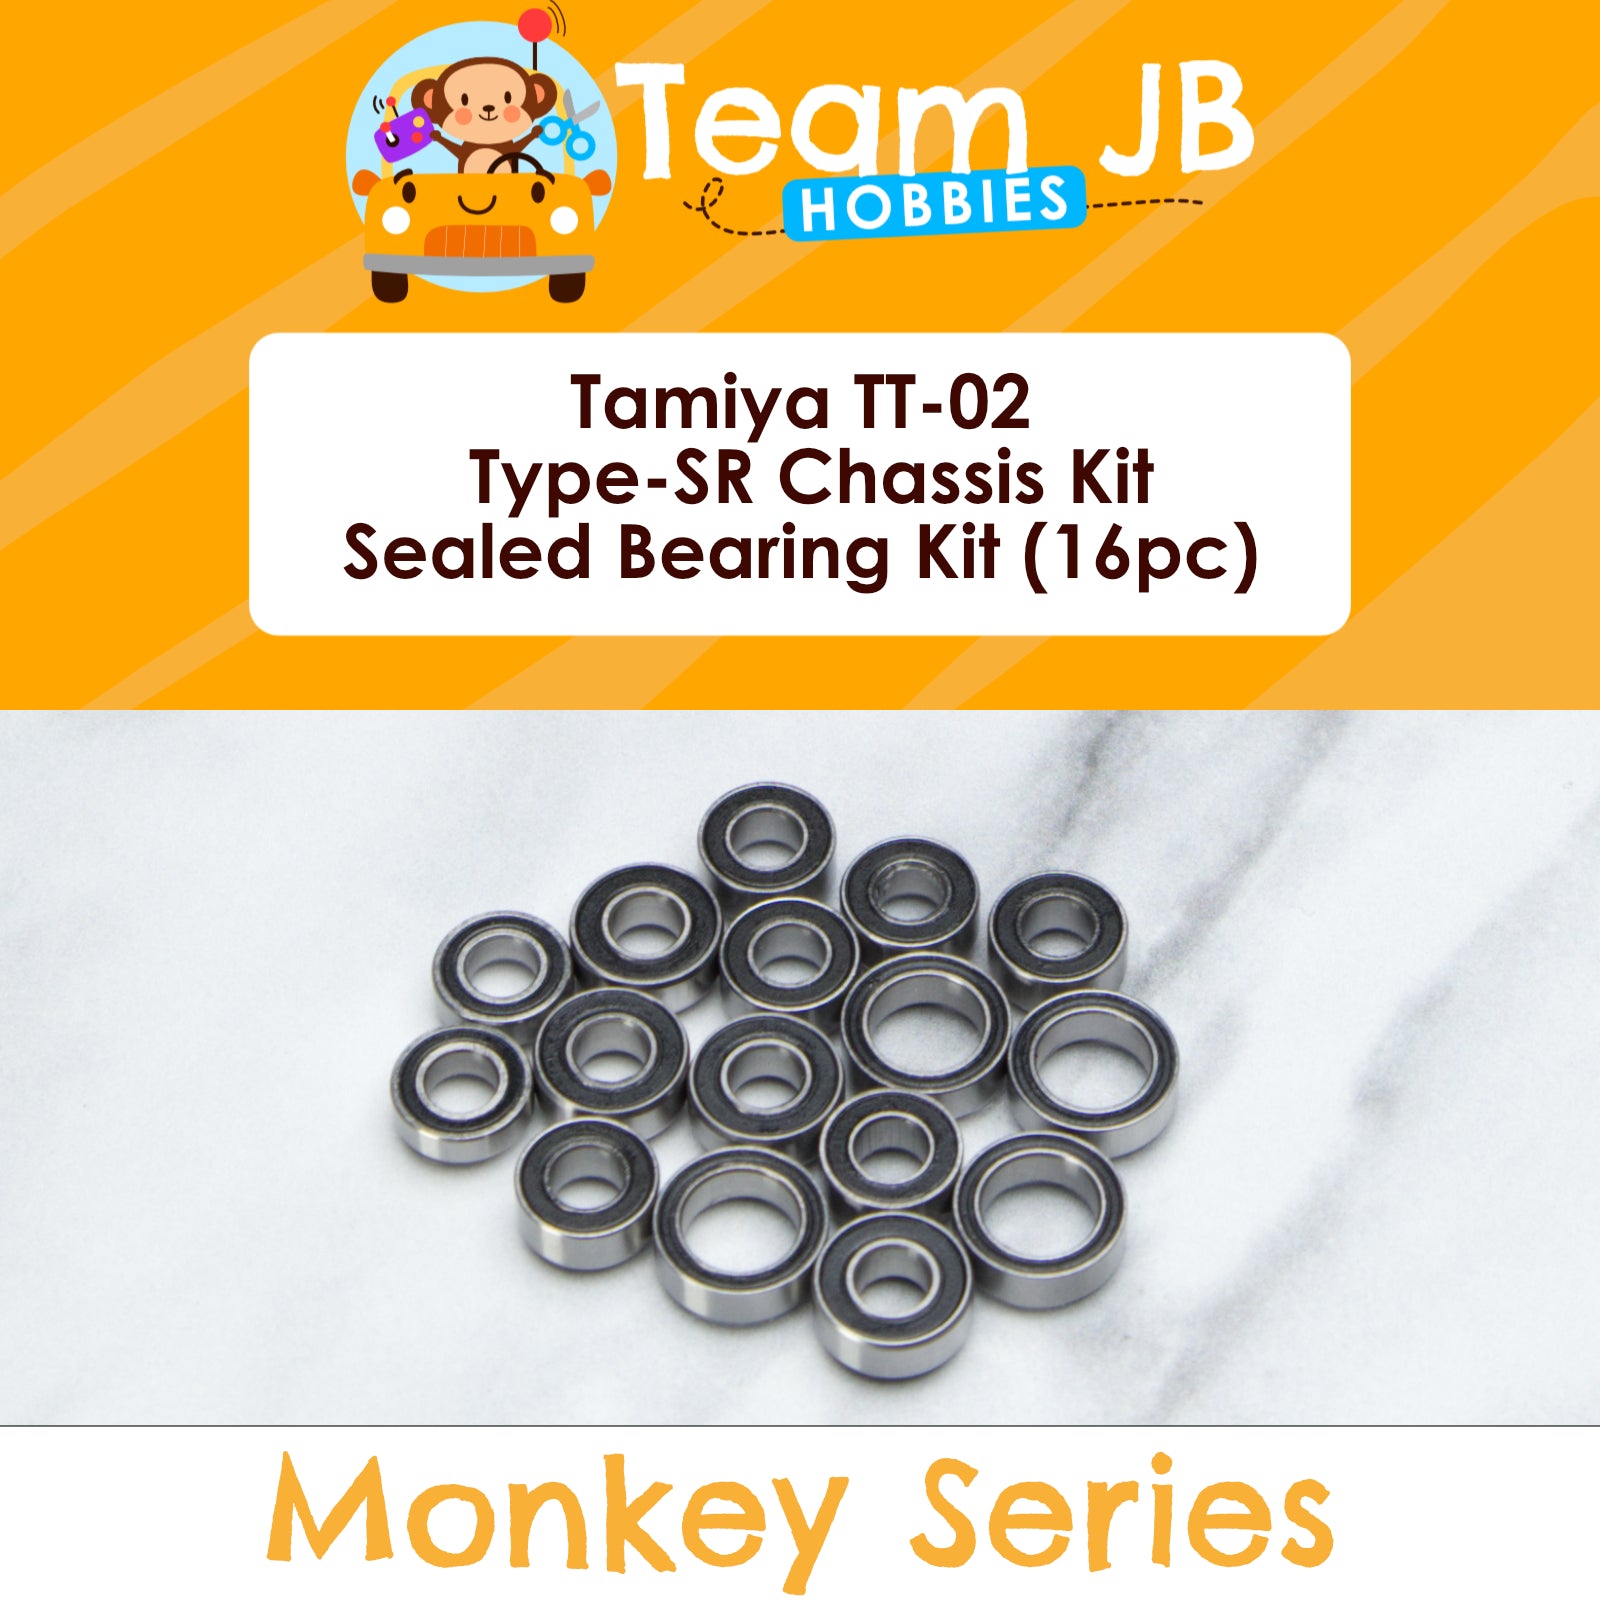 Tamiya TT-02 Type-SR Chassis Kit - Sealed Bearing Kit